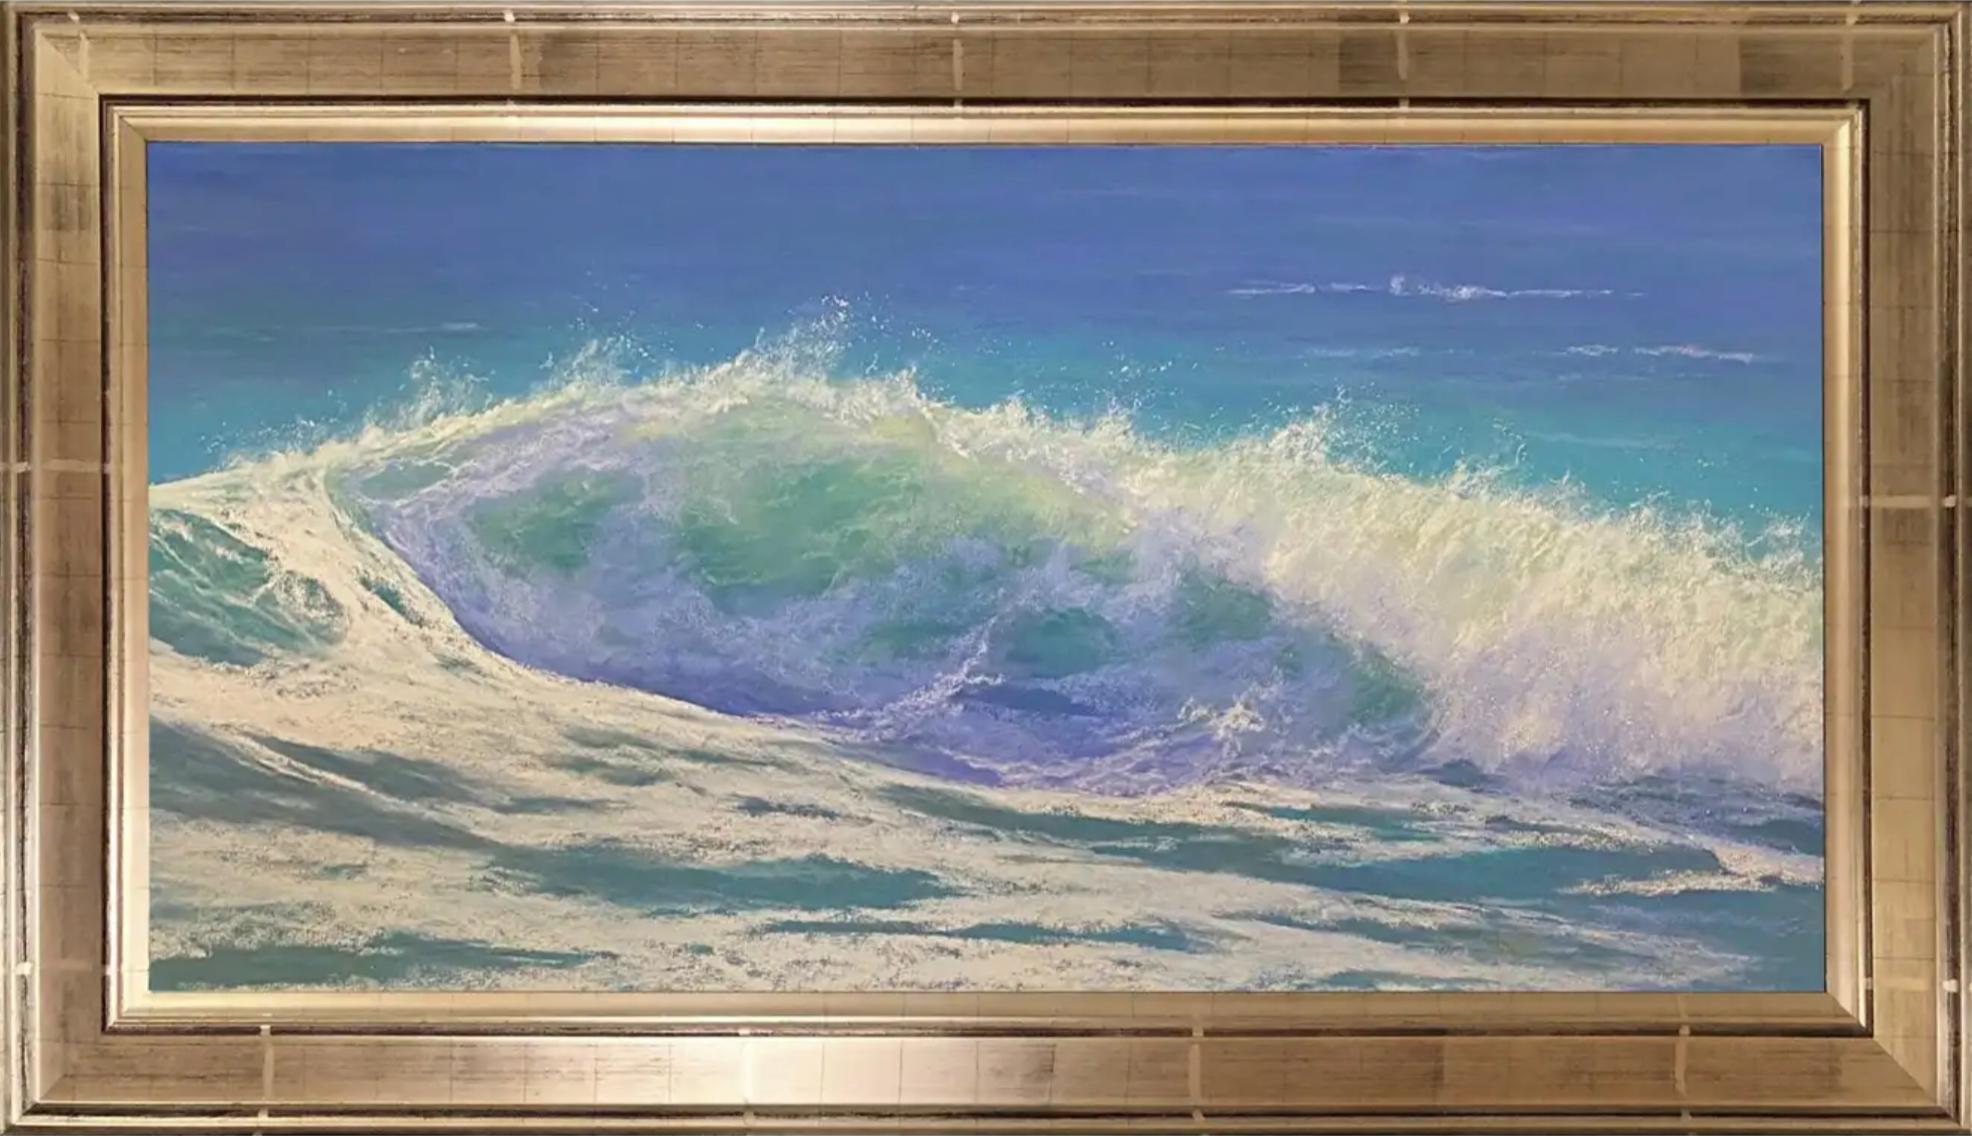 Dina Gardner Landscape Art – Warm Wasser, gerahmtes Original-Impressionistisches Pastellgemälde mit Meereslandschaft auf Papier